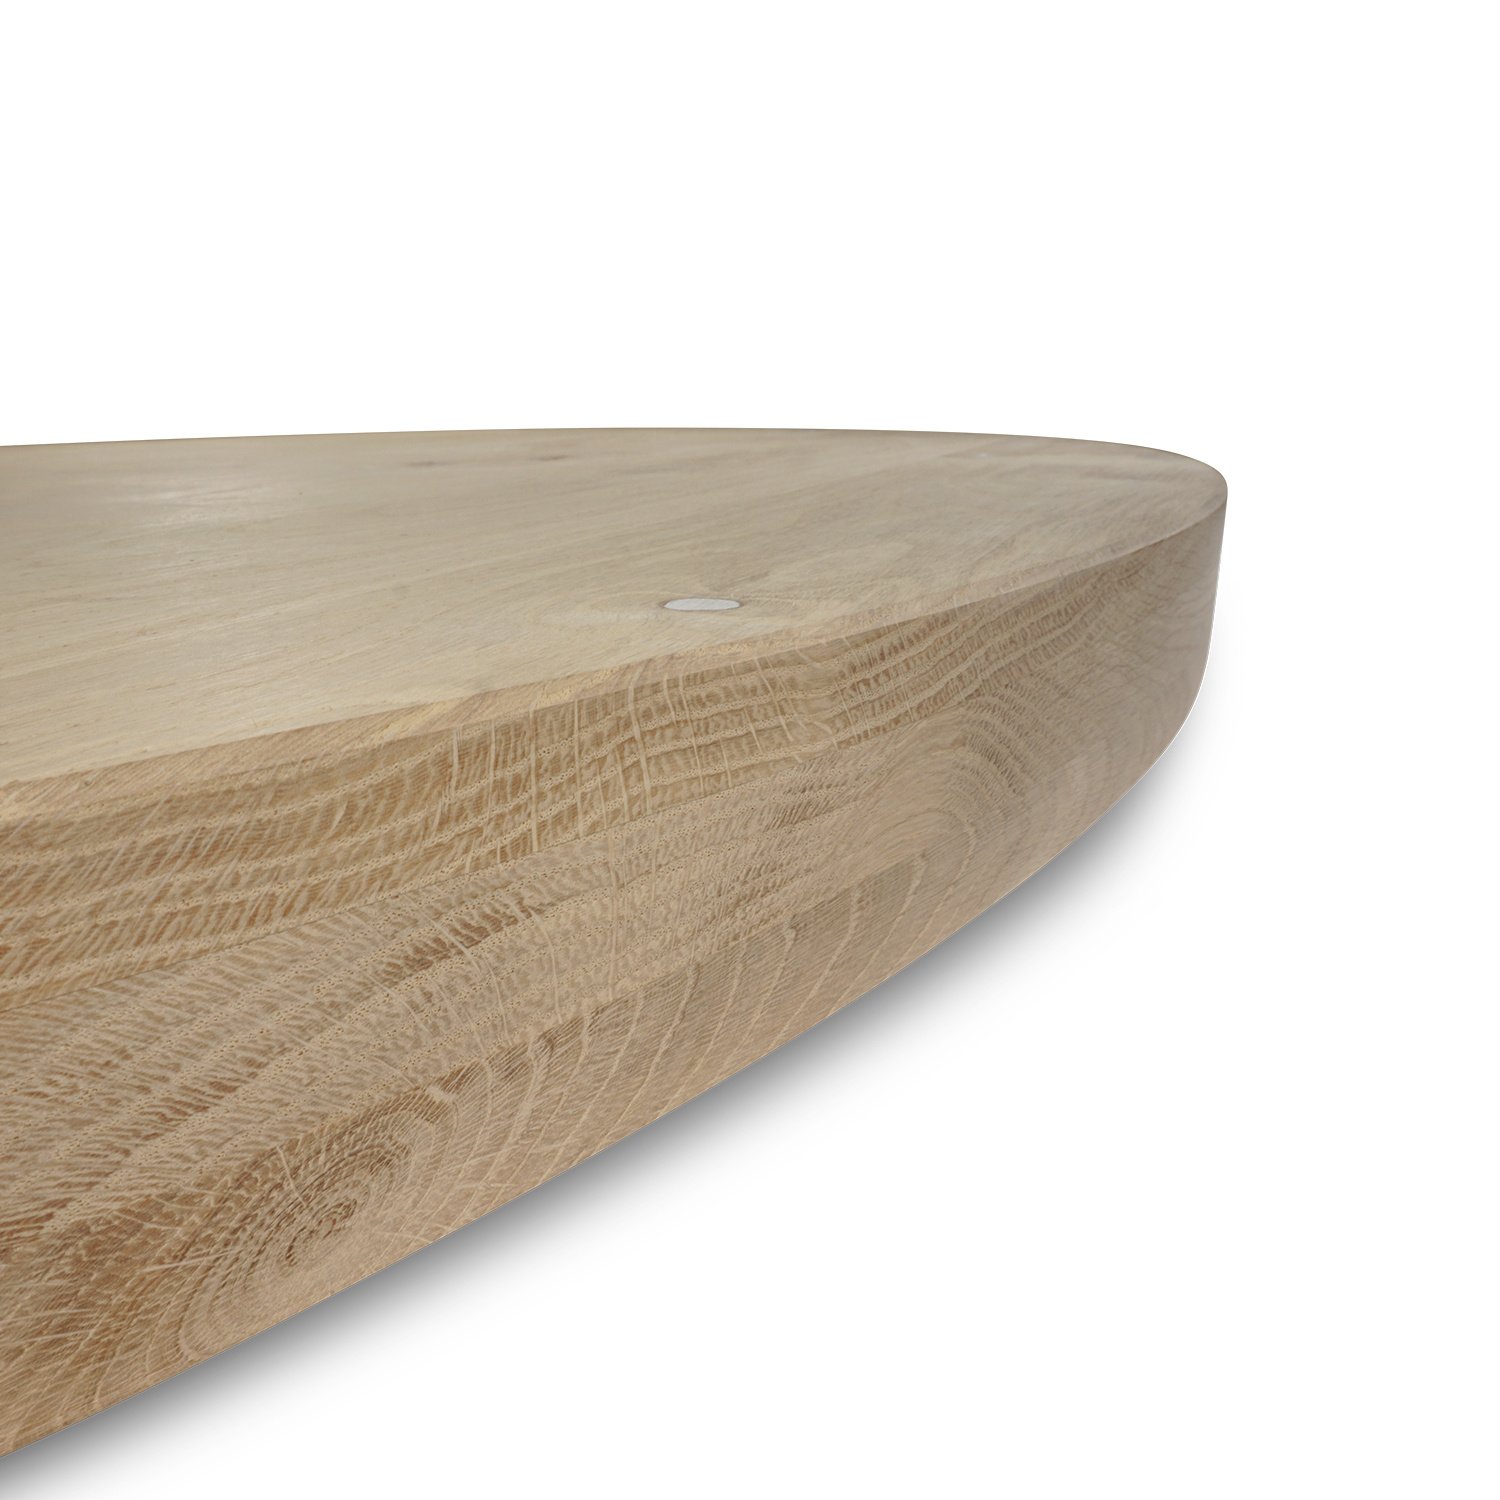  Tischplatte Eiche rund nach Maß - 6 cm dick (3-lagig) - Eichenholz rustikal - Durchmesser: 35 - 130 cm - Eiche Tischplatte rund - aufgedoppelt - verleimt & künstlich getrocknet (HF 8-12%)